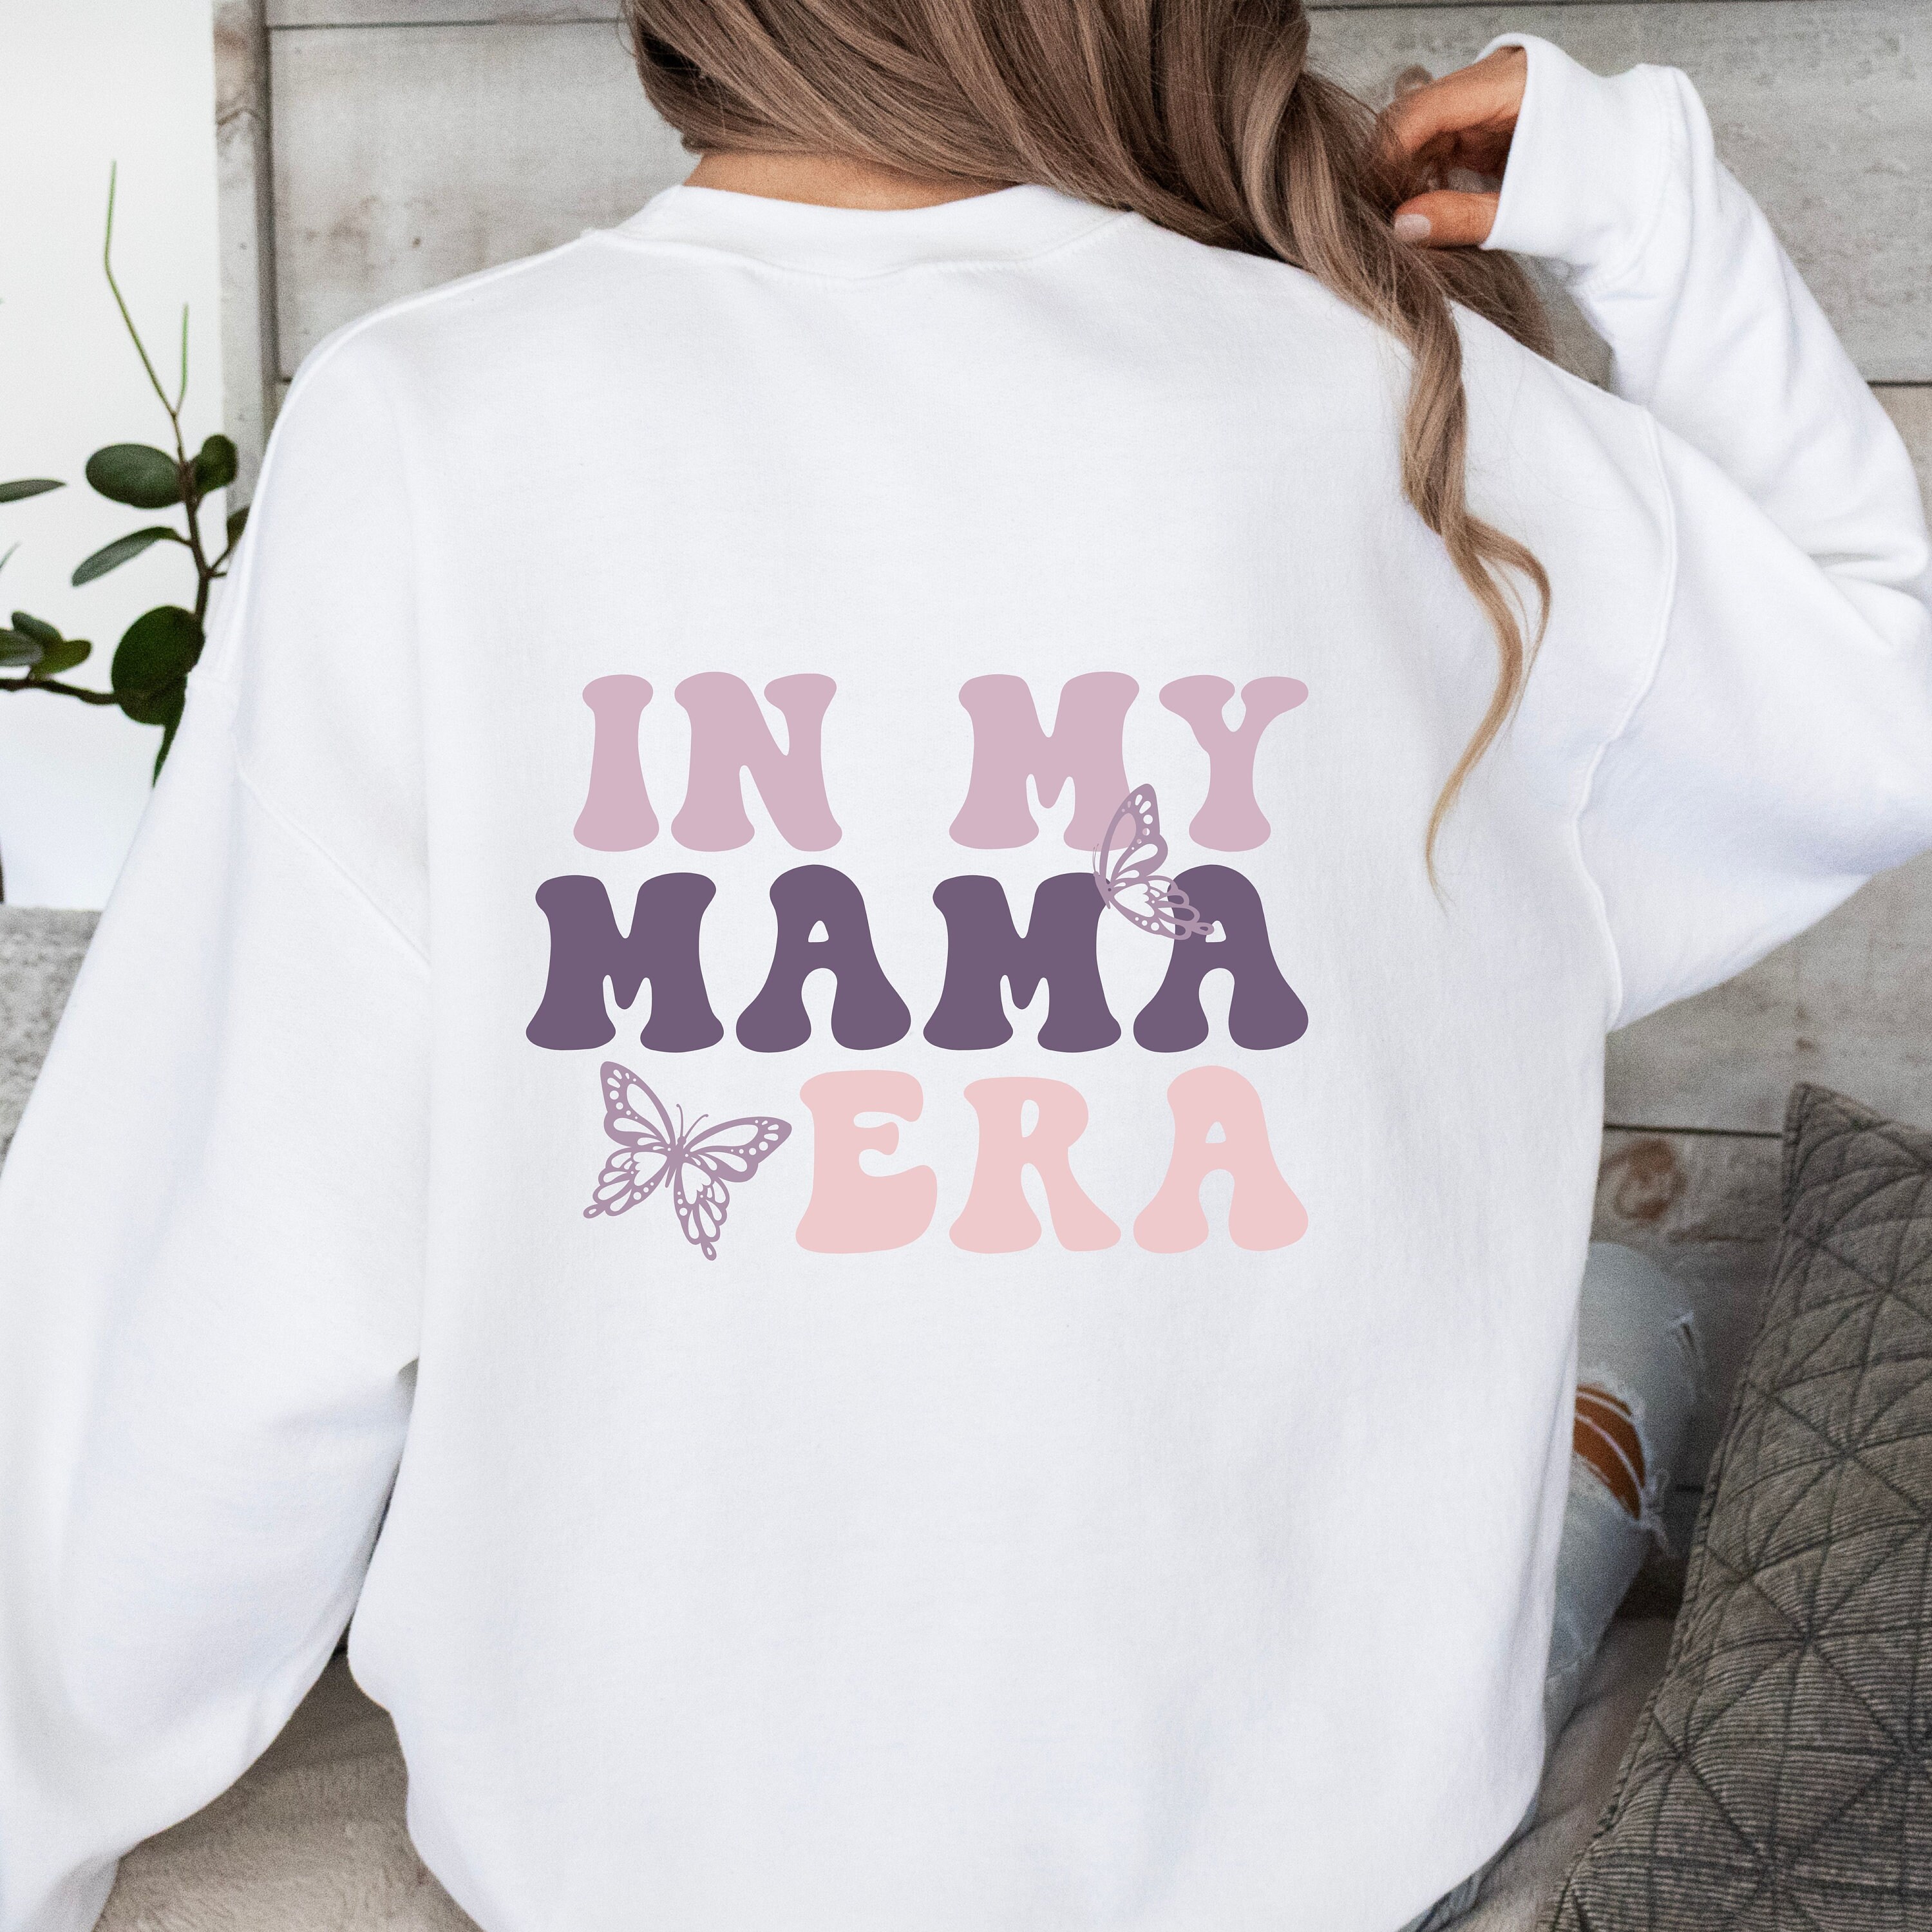 Discover In My Mama Era 母の時代に 男女兼用 スウェット ニット セーター お母さんへのギフト 国際女性デープレゼント Gift for Mama